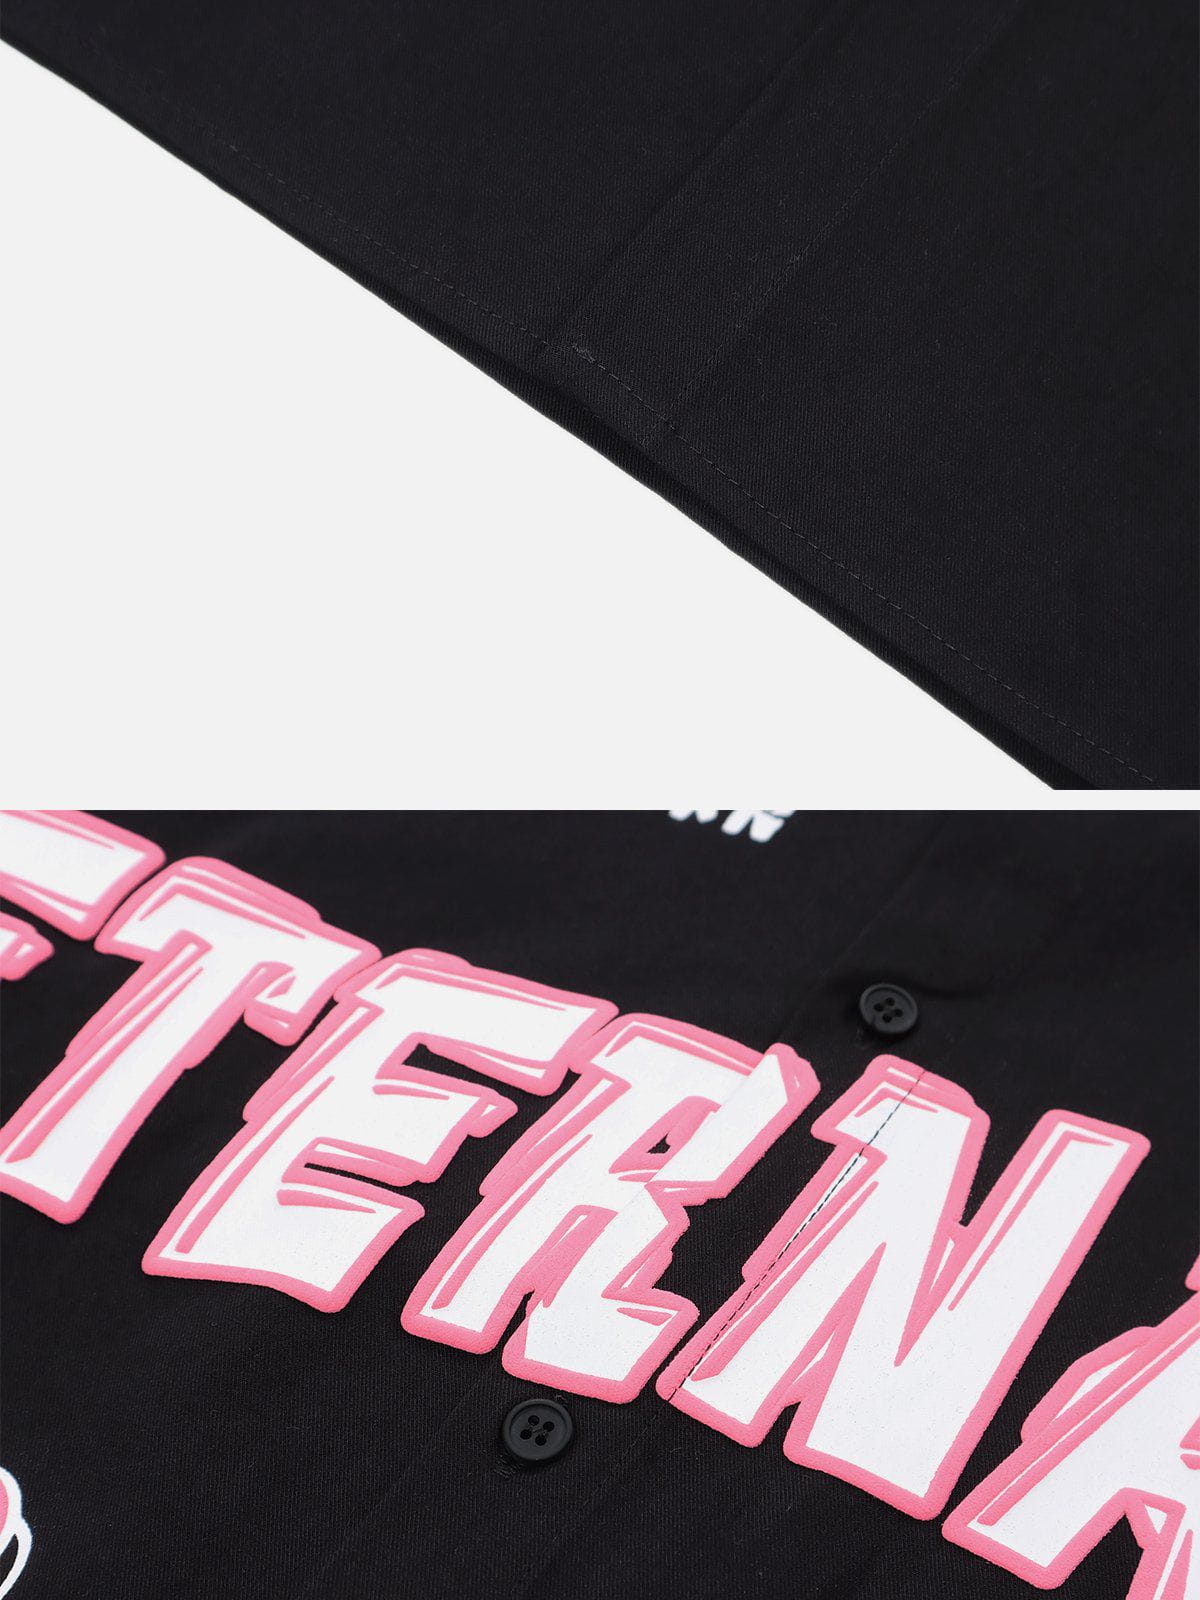 Eprezzy® - Patchwork Letter Print Jacket Streetwear Fashion - eprezzy.com